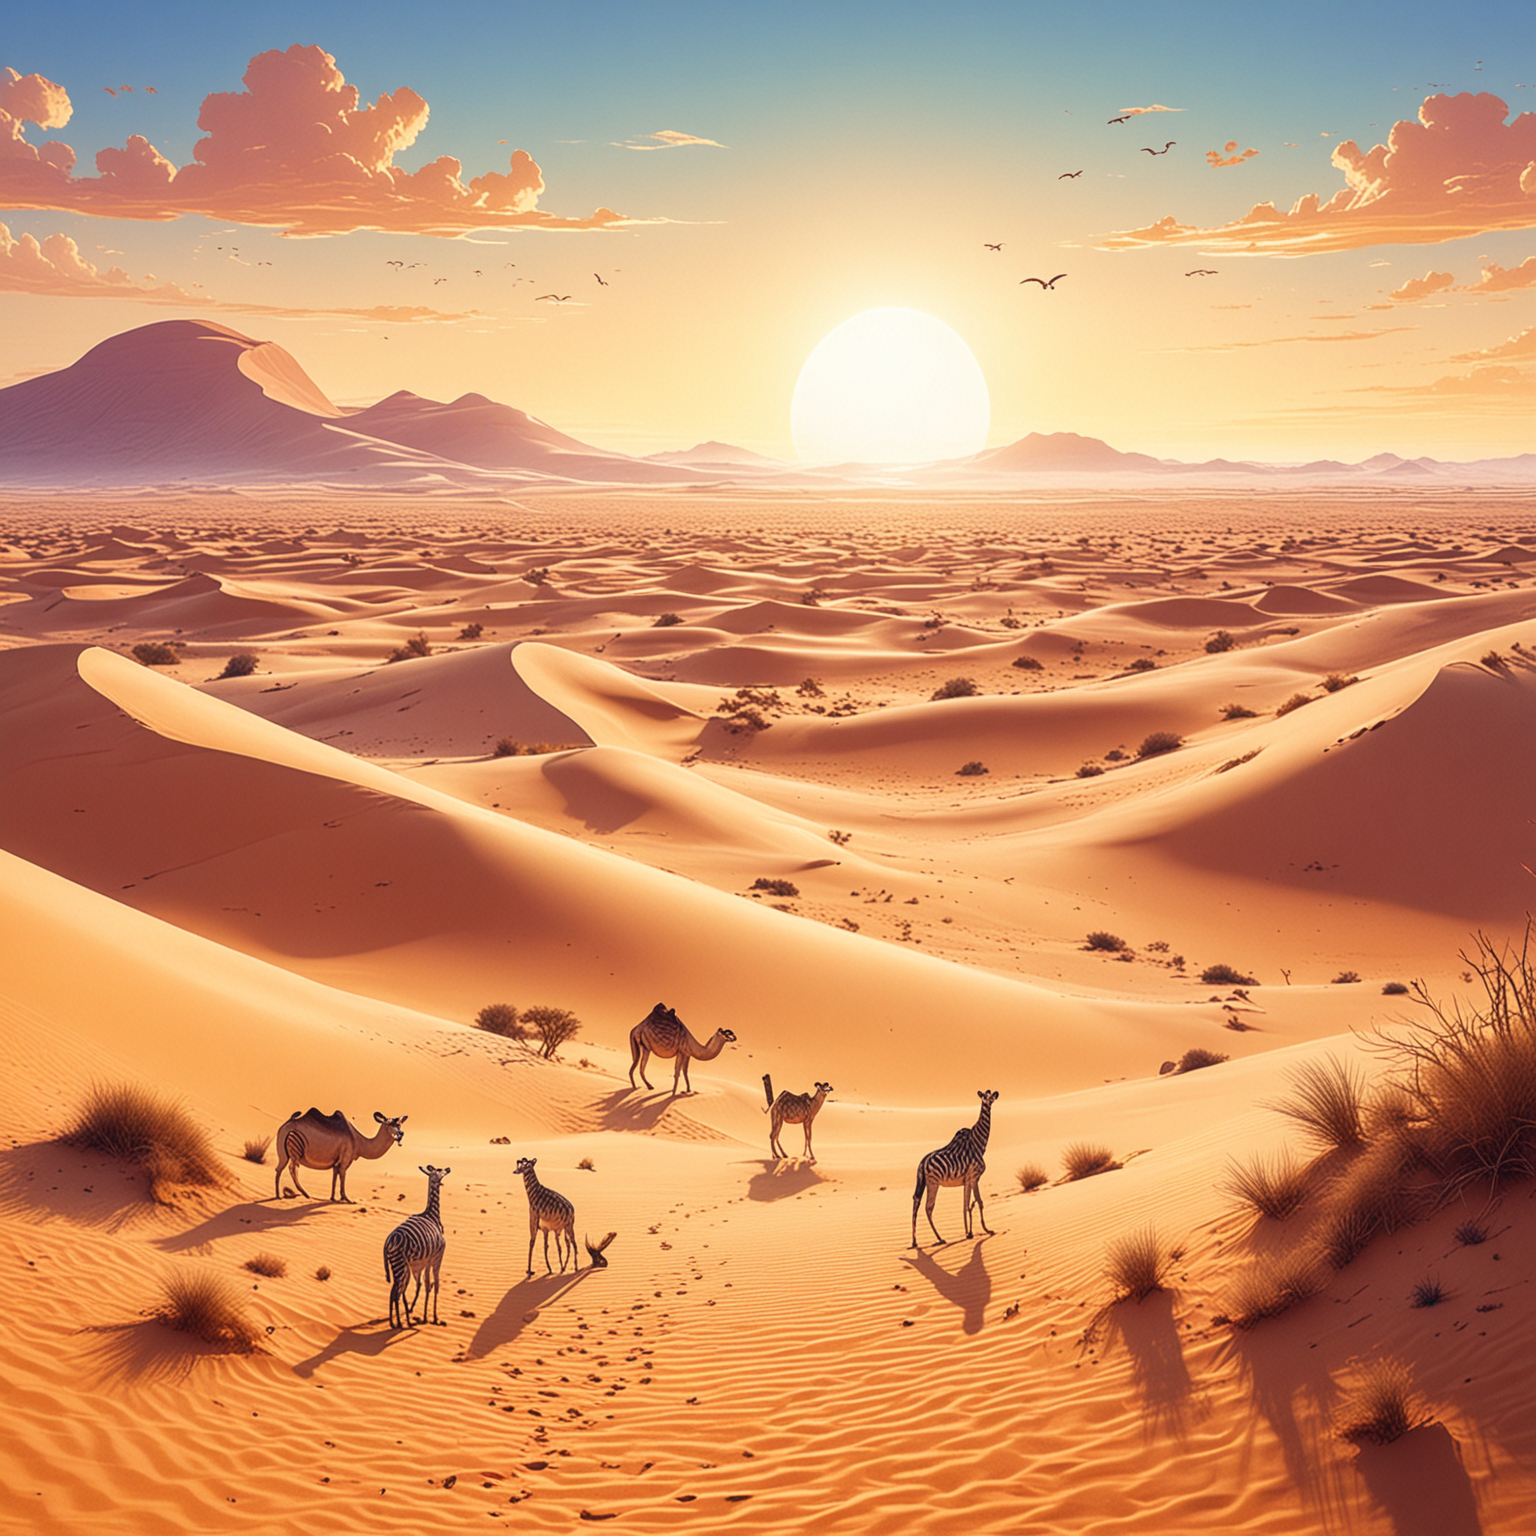 Eine majestätische Szene der Sahara, mit goldenen Sanddünen, einem strahlend blauen Himmel und einer Vielzahl von Tieren, die sich im Vordergrund versammeln, illustration, kawaii style